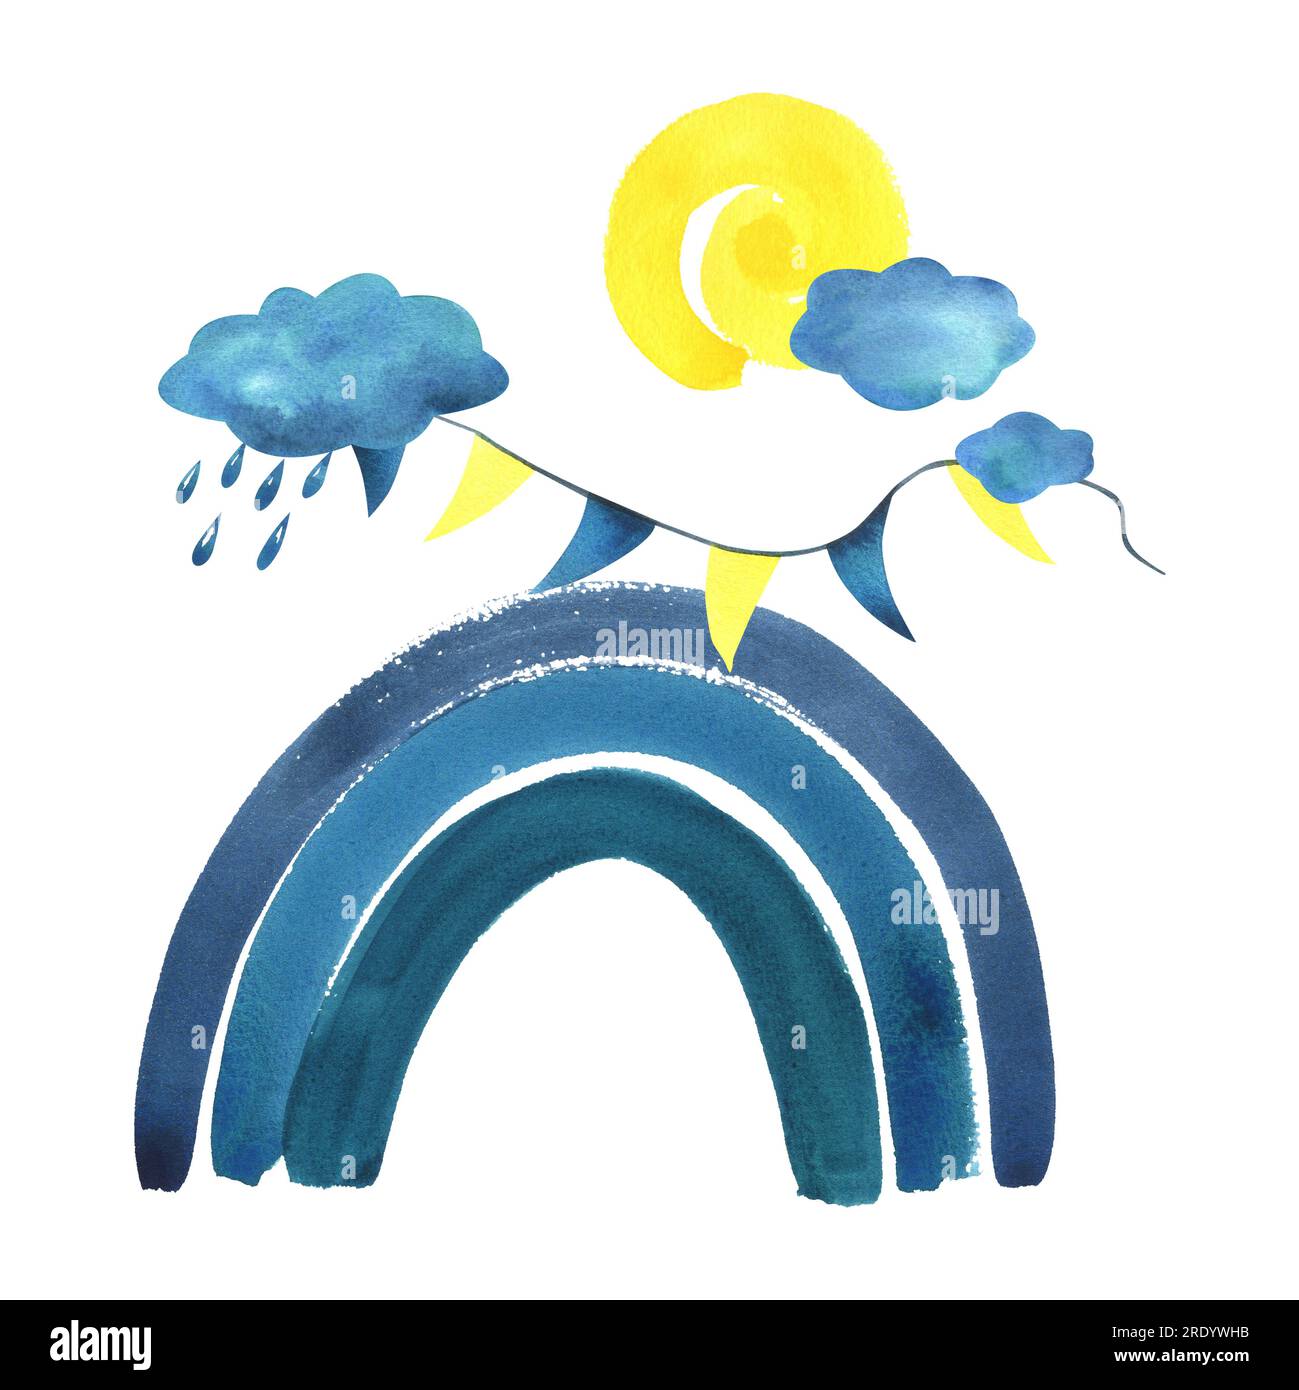 Arc-en-ciel bleu avec nuages, gouttes de pluie, soleil jaune, guirlande de drapeaux. Illustration d'aquarelle, dessinée à la main, dans un style d'enfant. Un isolé Banque D'Images